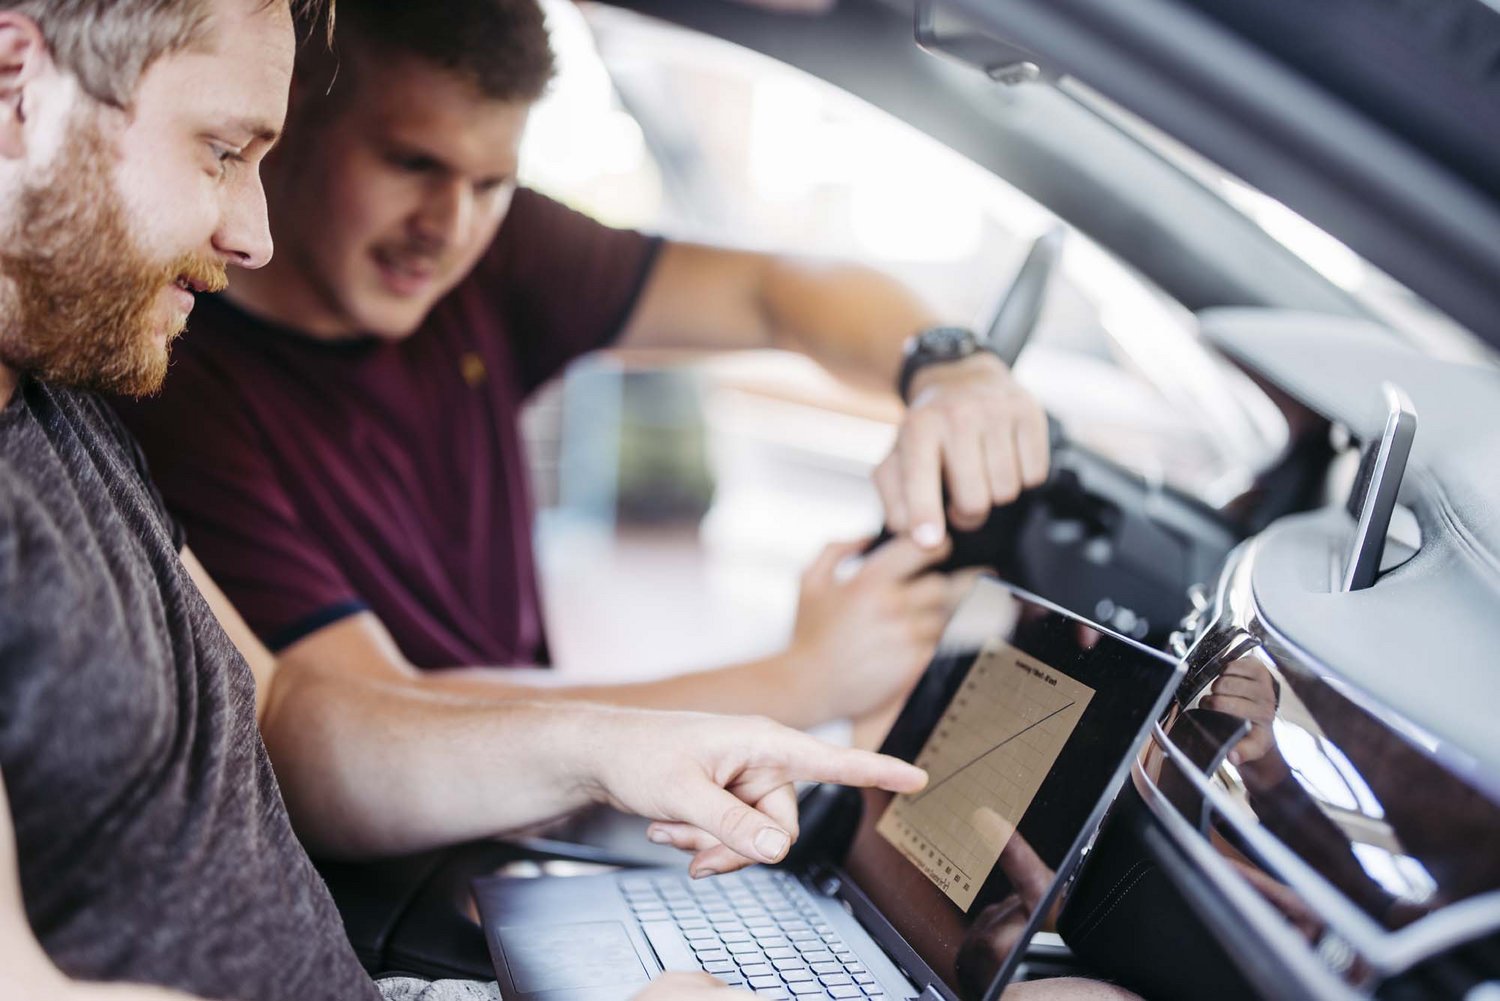 Zwei Personen sitzen in einem Fahrzeug die eine hat ein Laptop auf ihrem Schoß die andere Person schaut in den Laptop mit rein.